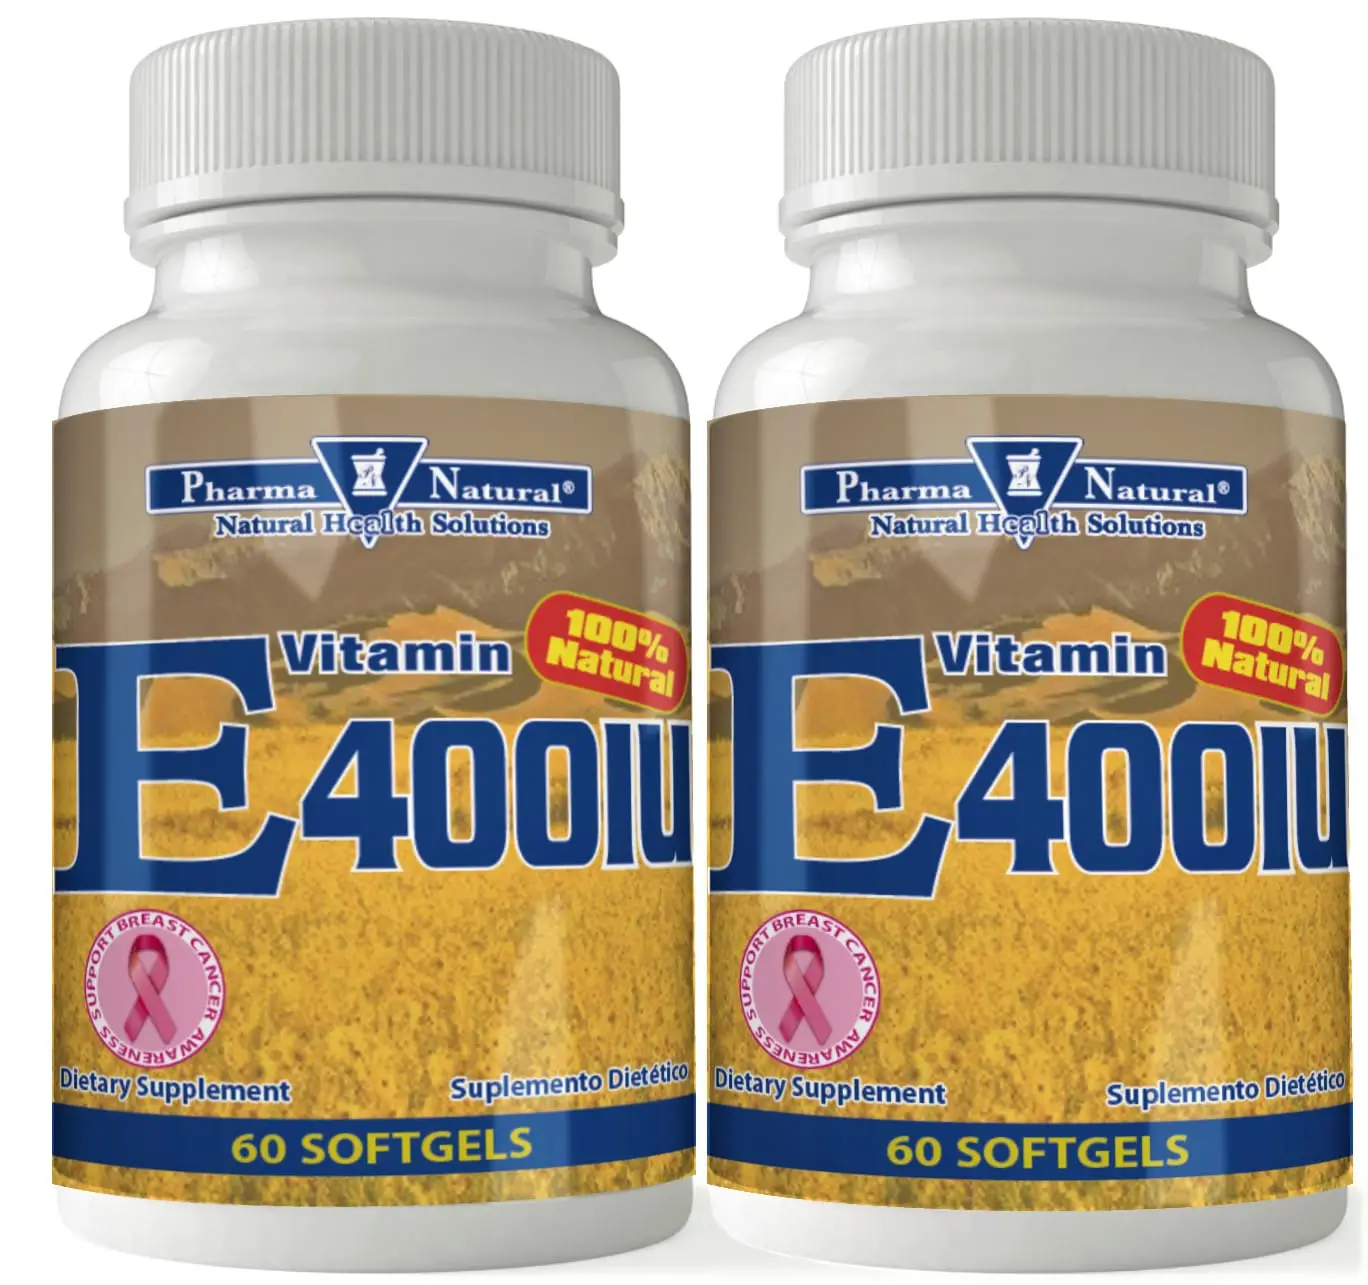 Vitamin E 400 iu by PN